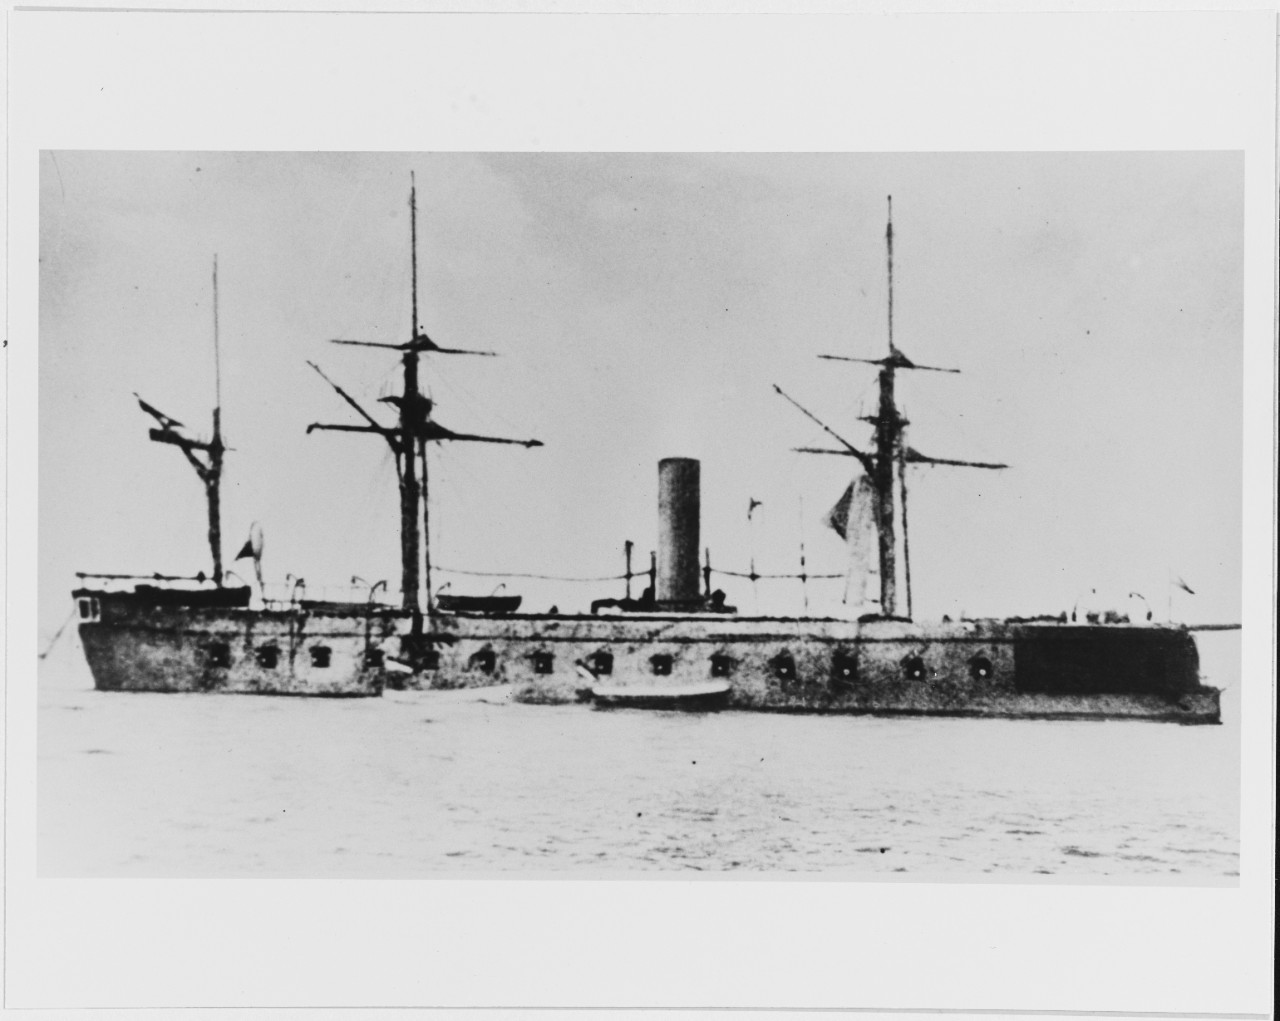 PRINZ EUGEN (Austrian battleship, 1877-1920)